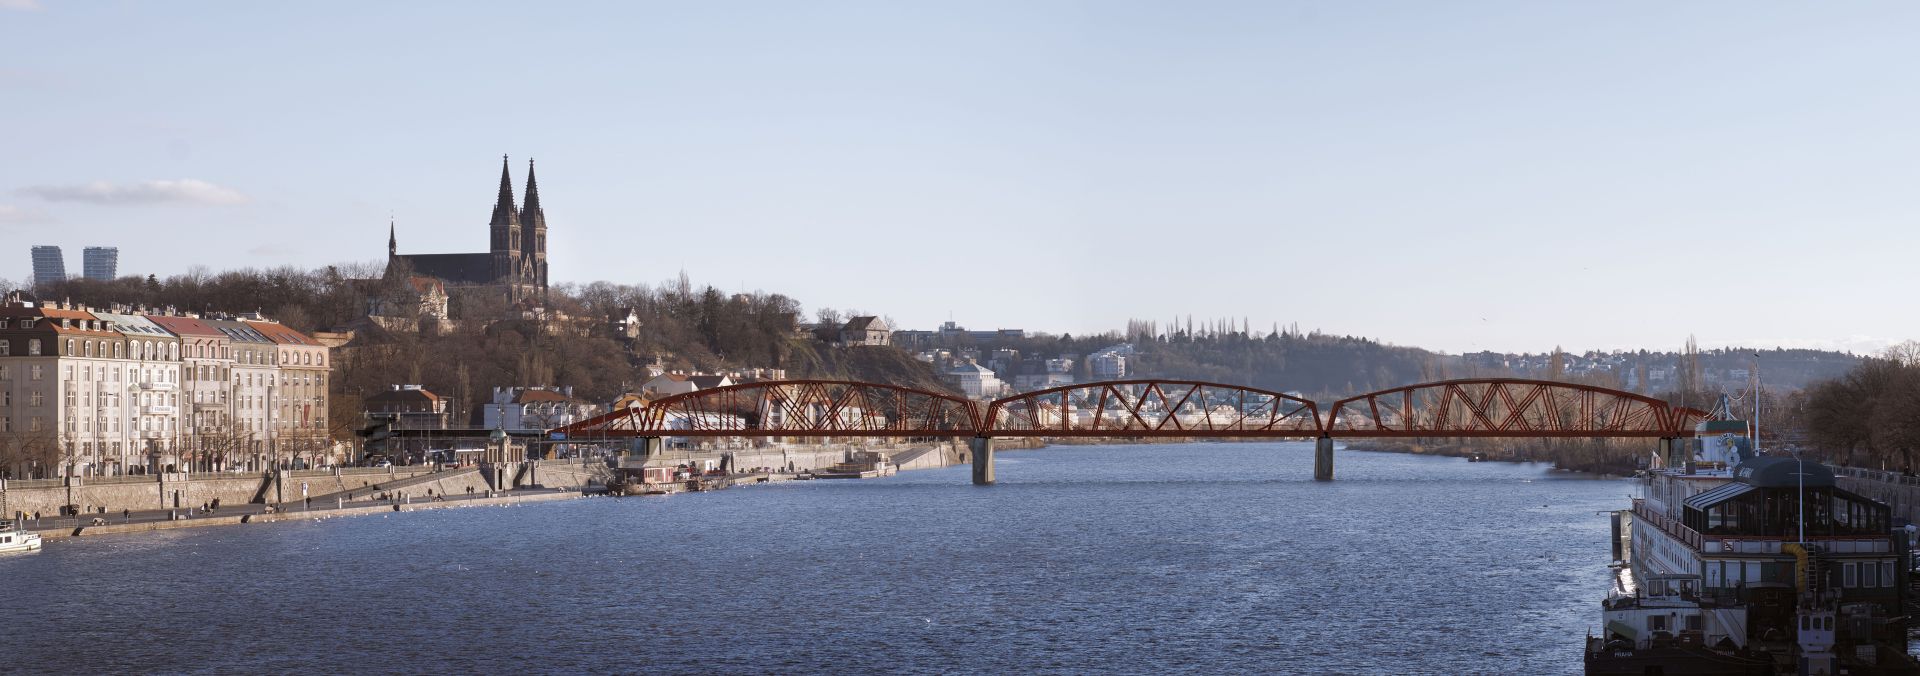 Vizualizace podoby nového železničního mostu přes Vltavu ve Výtoni